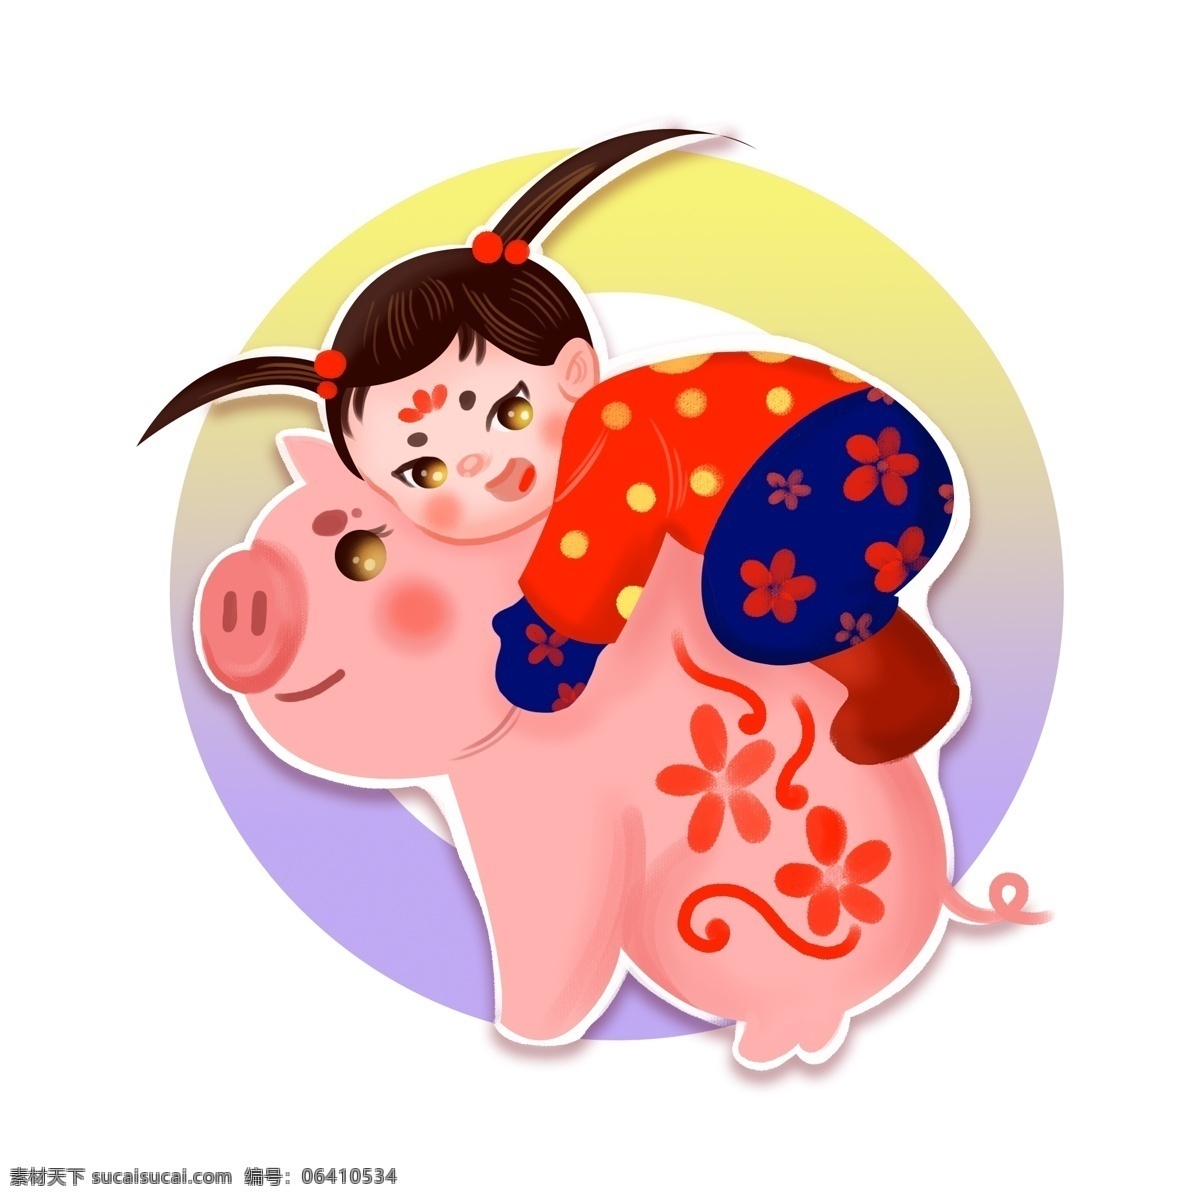 萌 娃 可爱 人物 元素 商用 女孩 春节 猪 萌萌 萌娃娃 娃娃 2019 新年 人物元素 猪宝宝